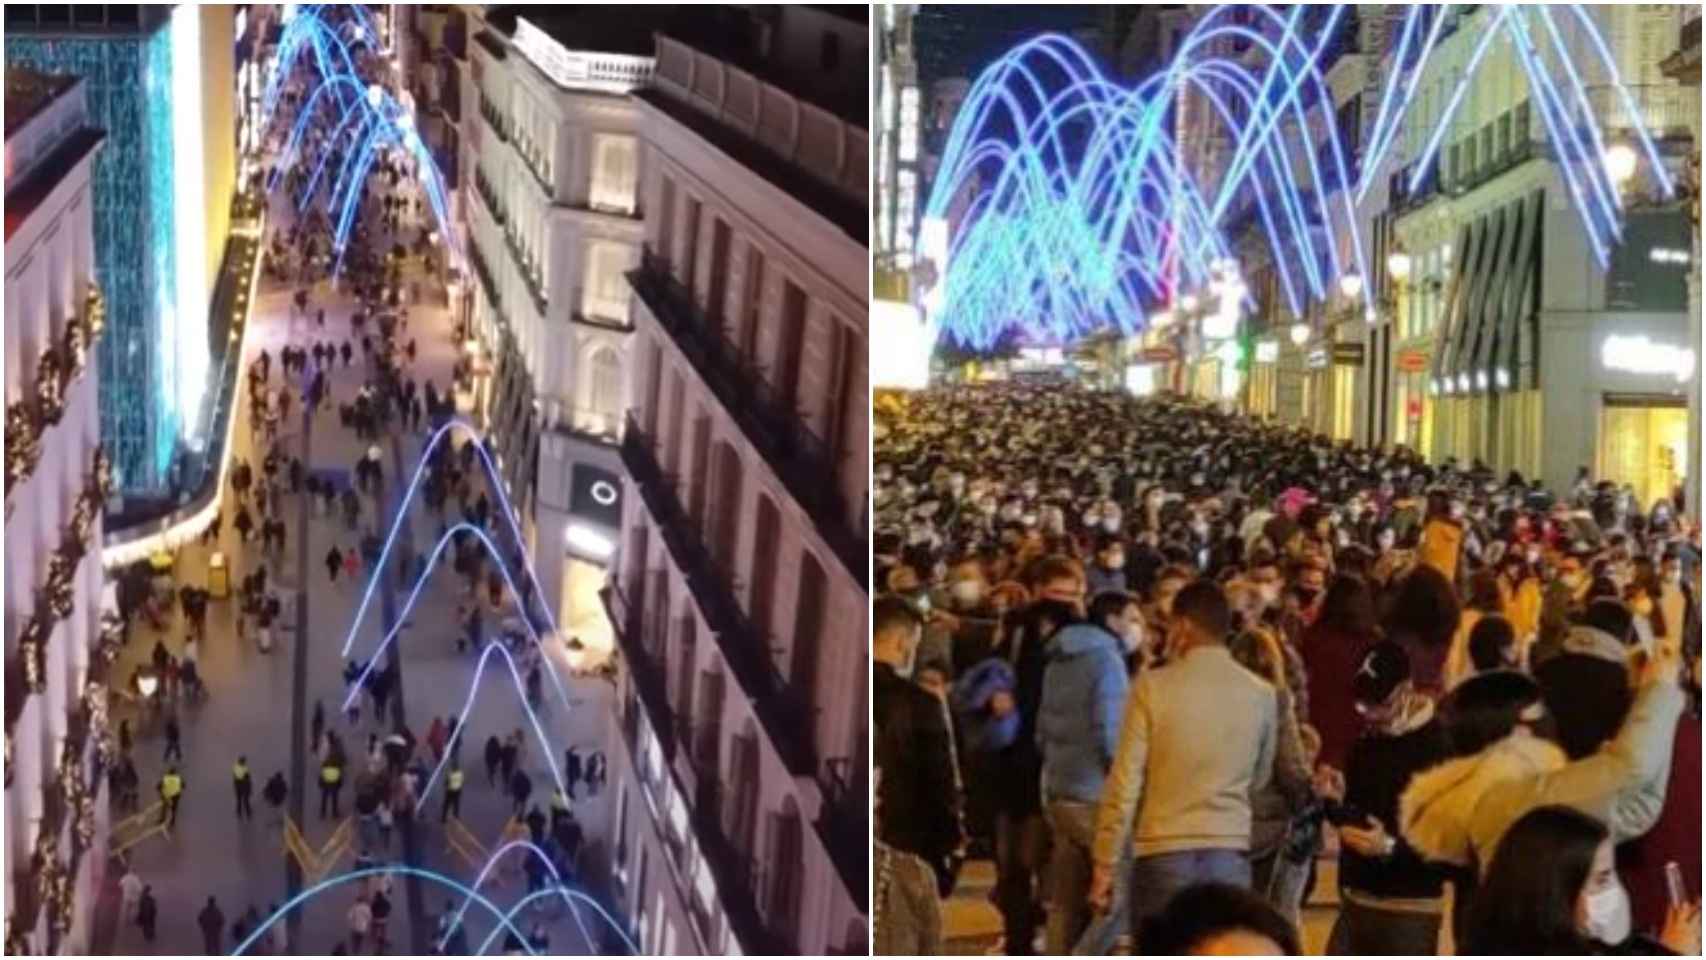 Las imágenes de los drones (a la izquierda) contra las de aglomeraciones (derecha).